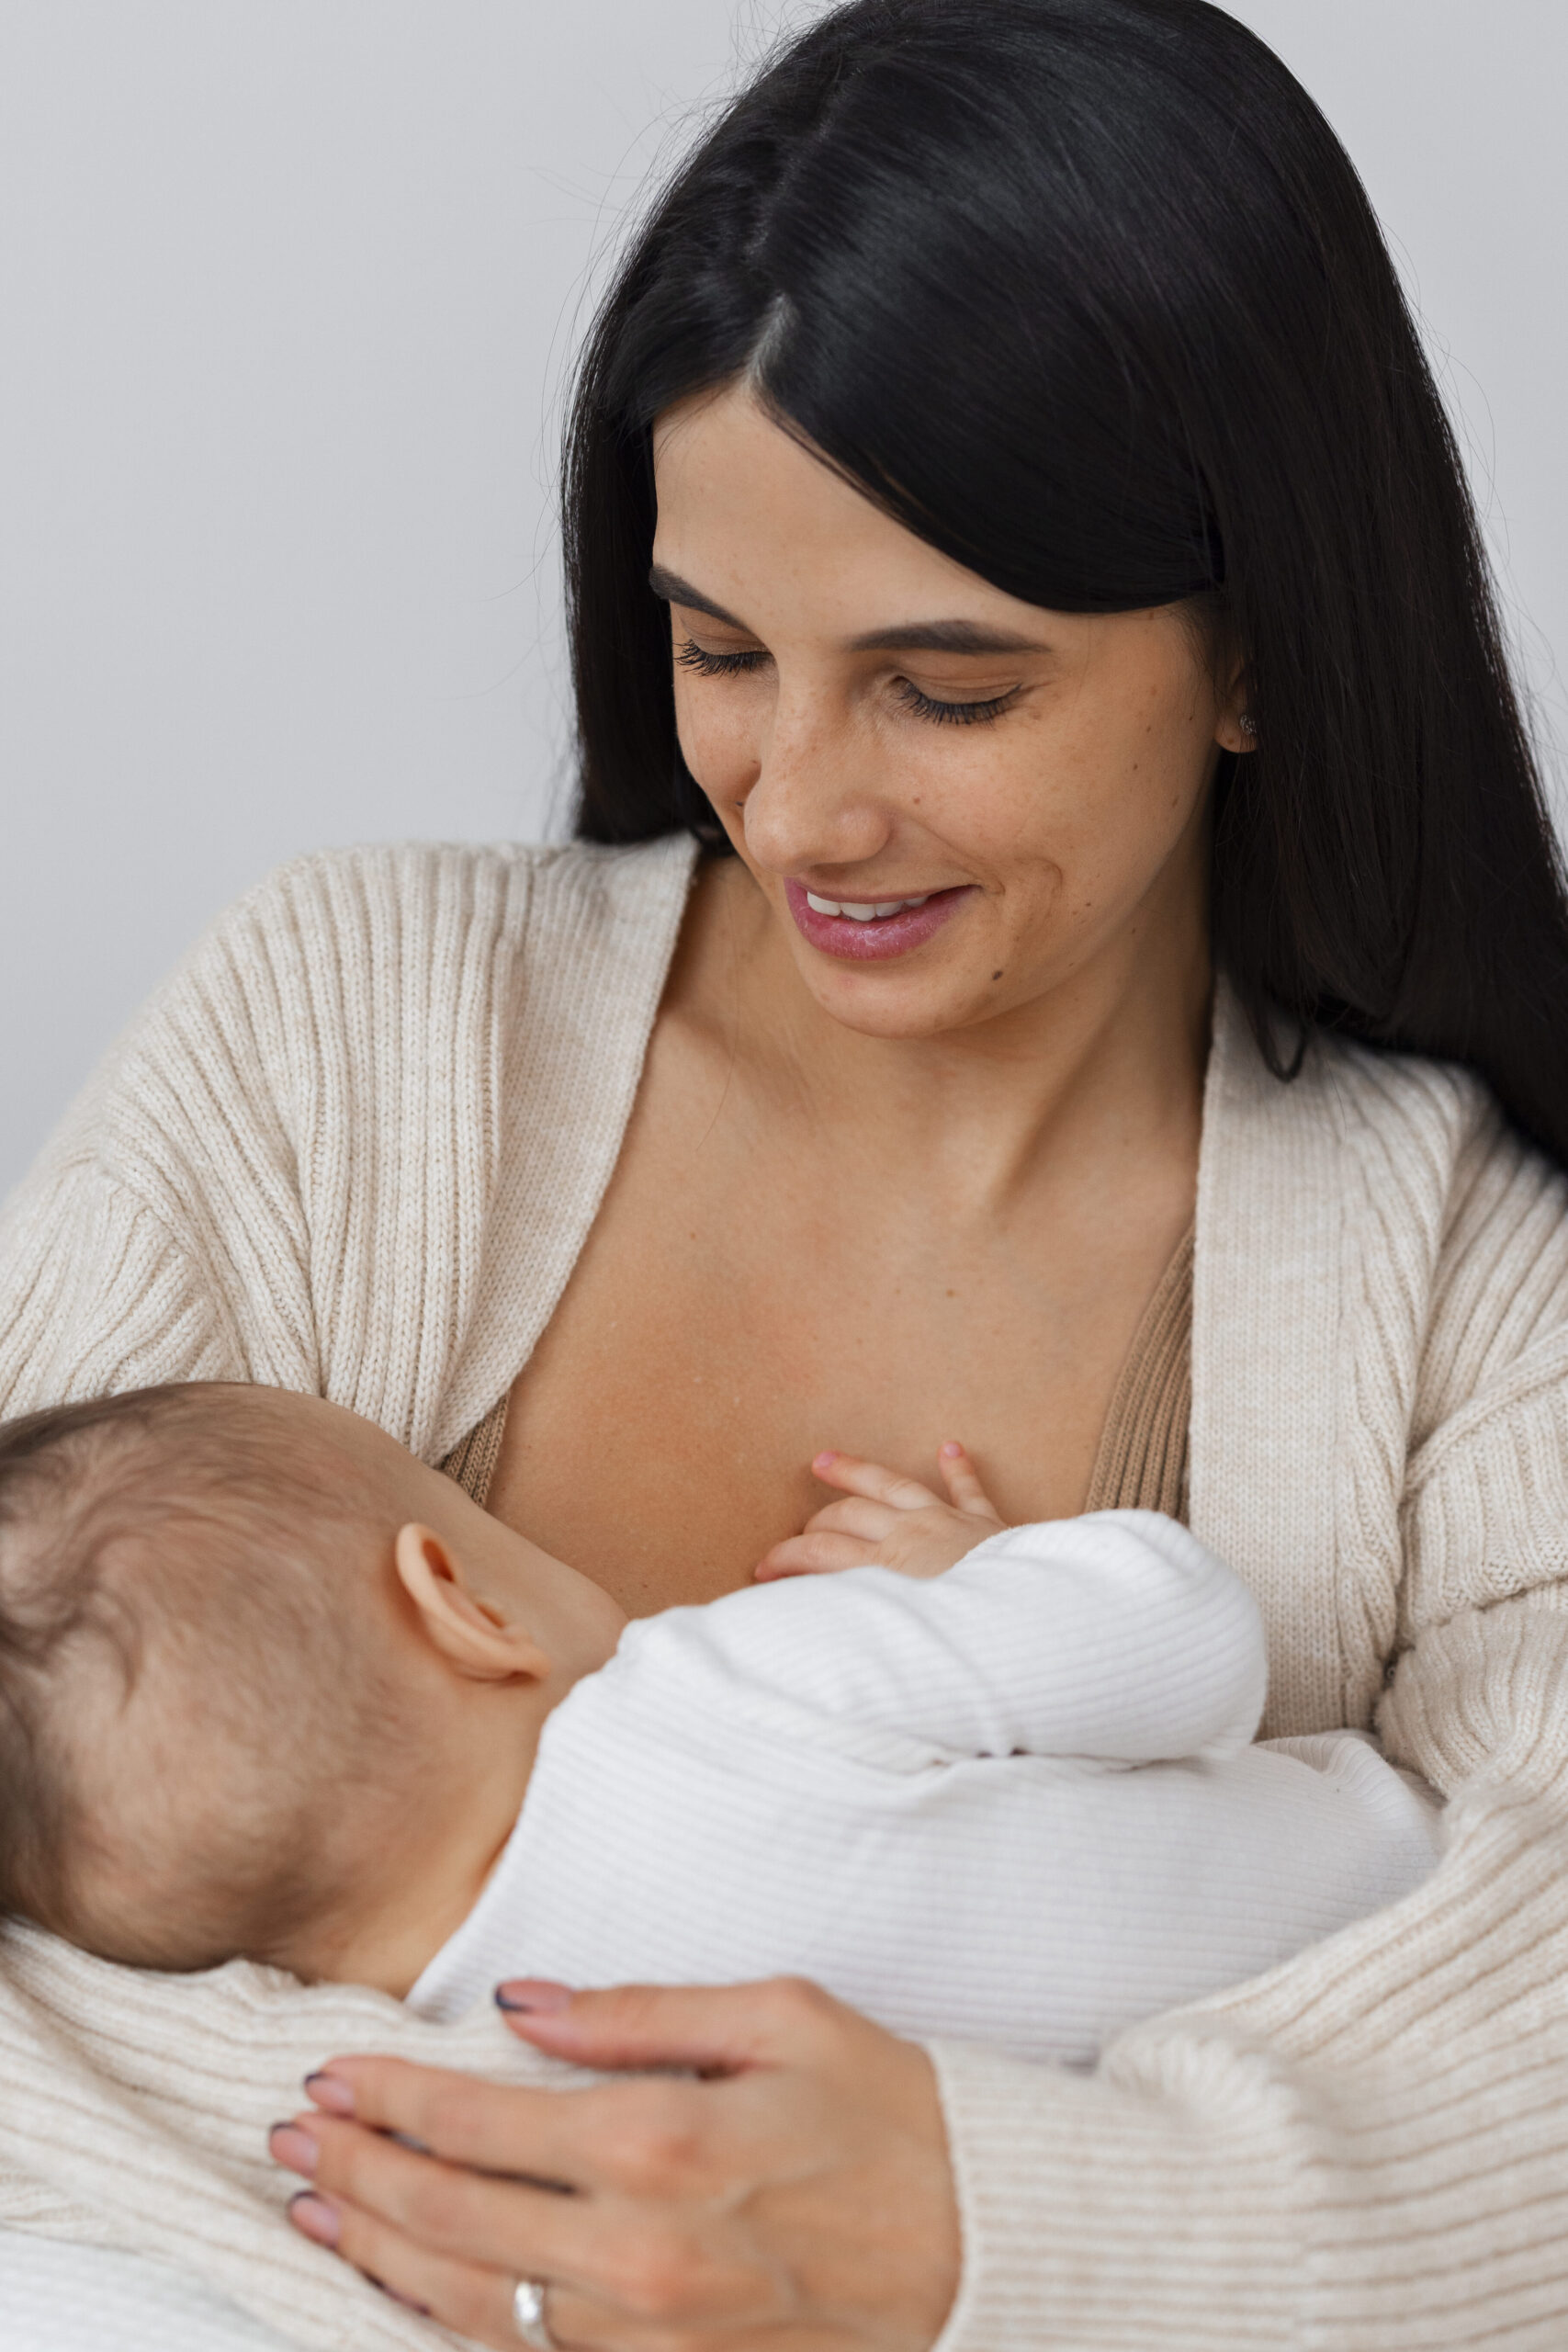 Motherhood and lactation 